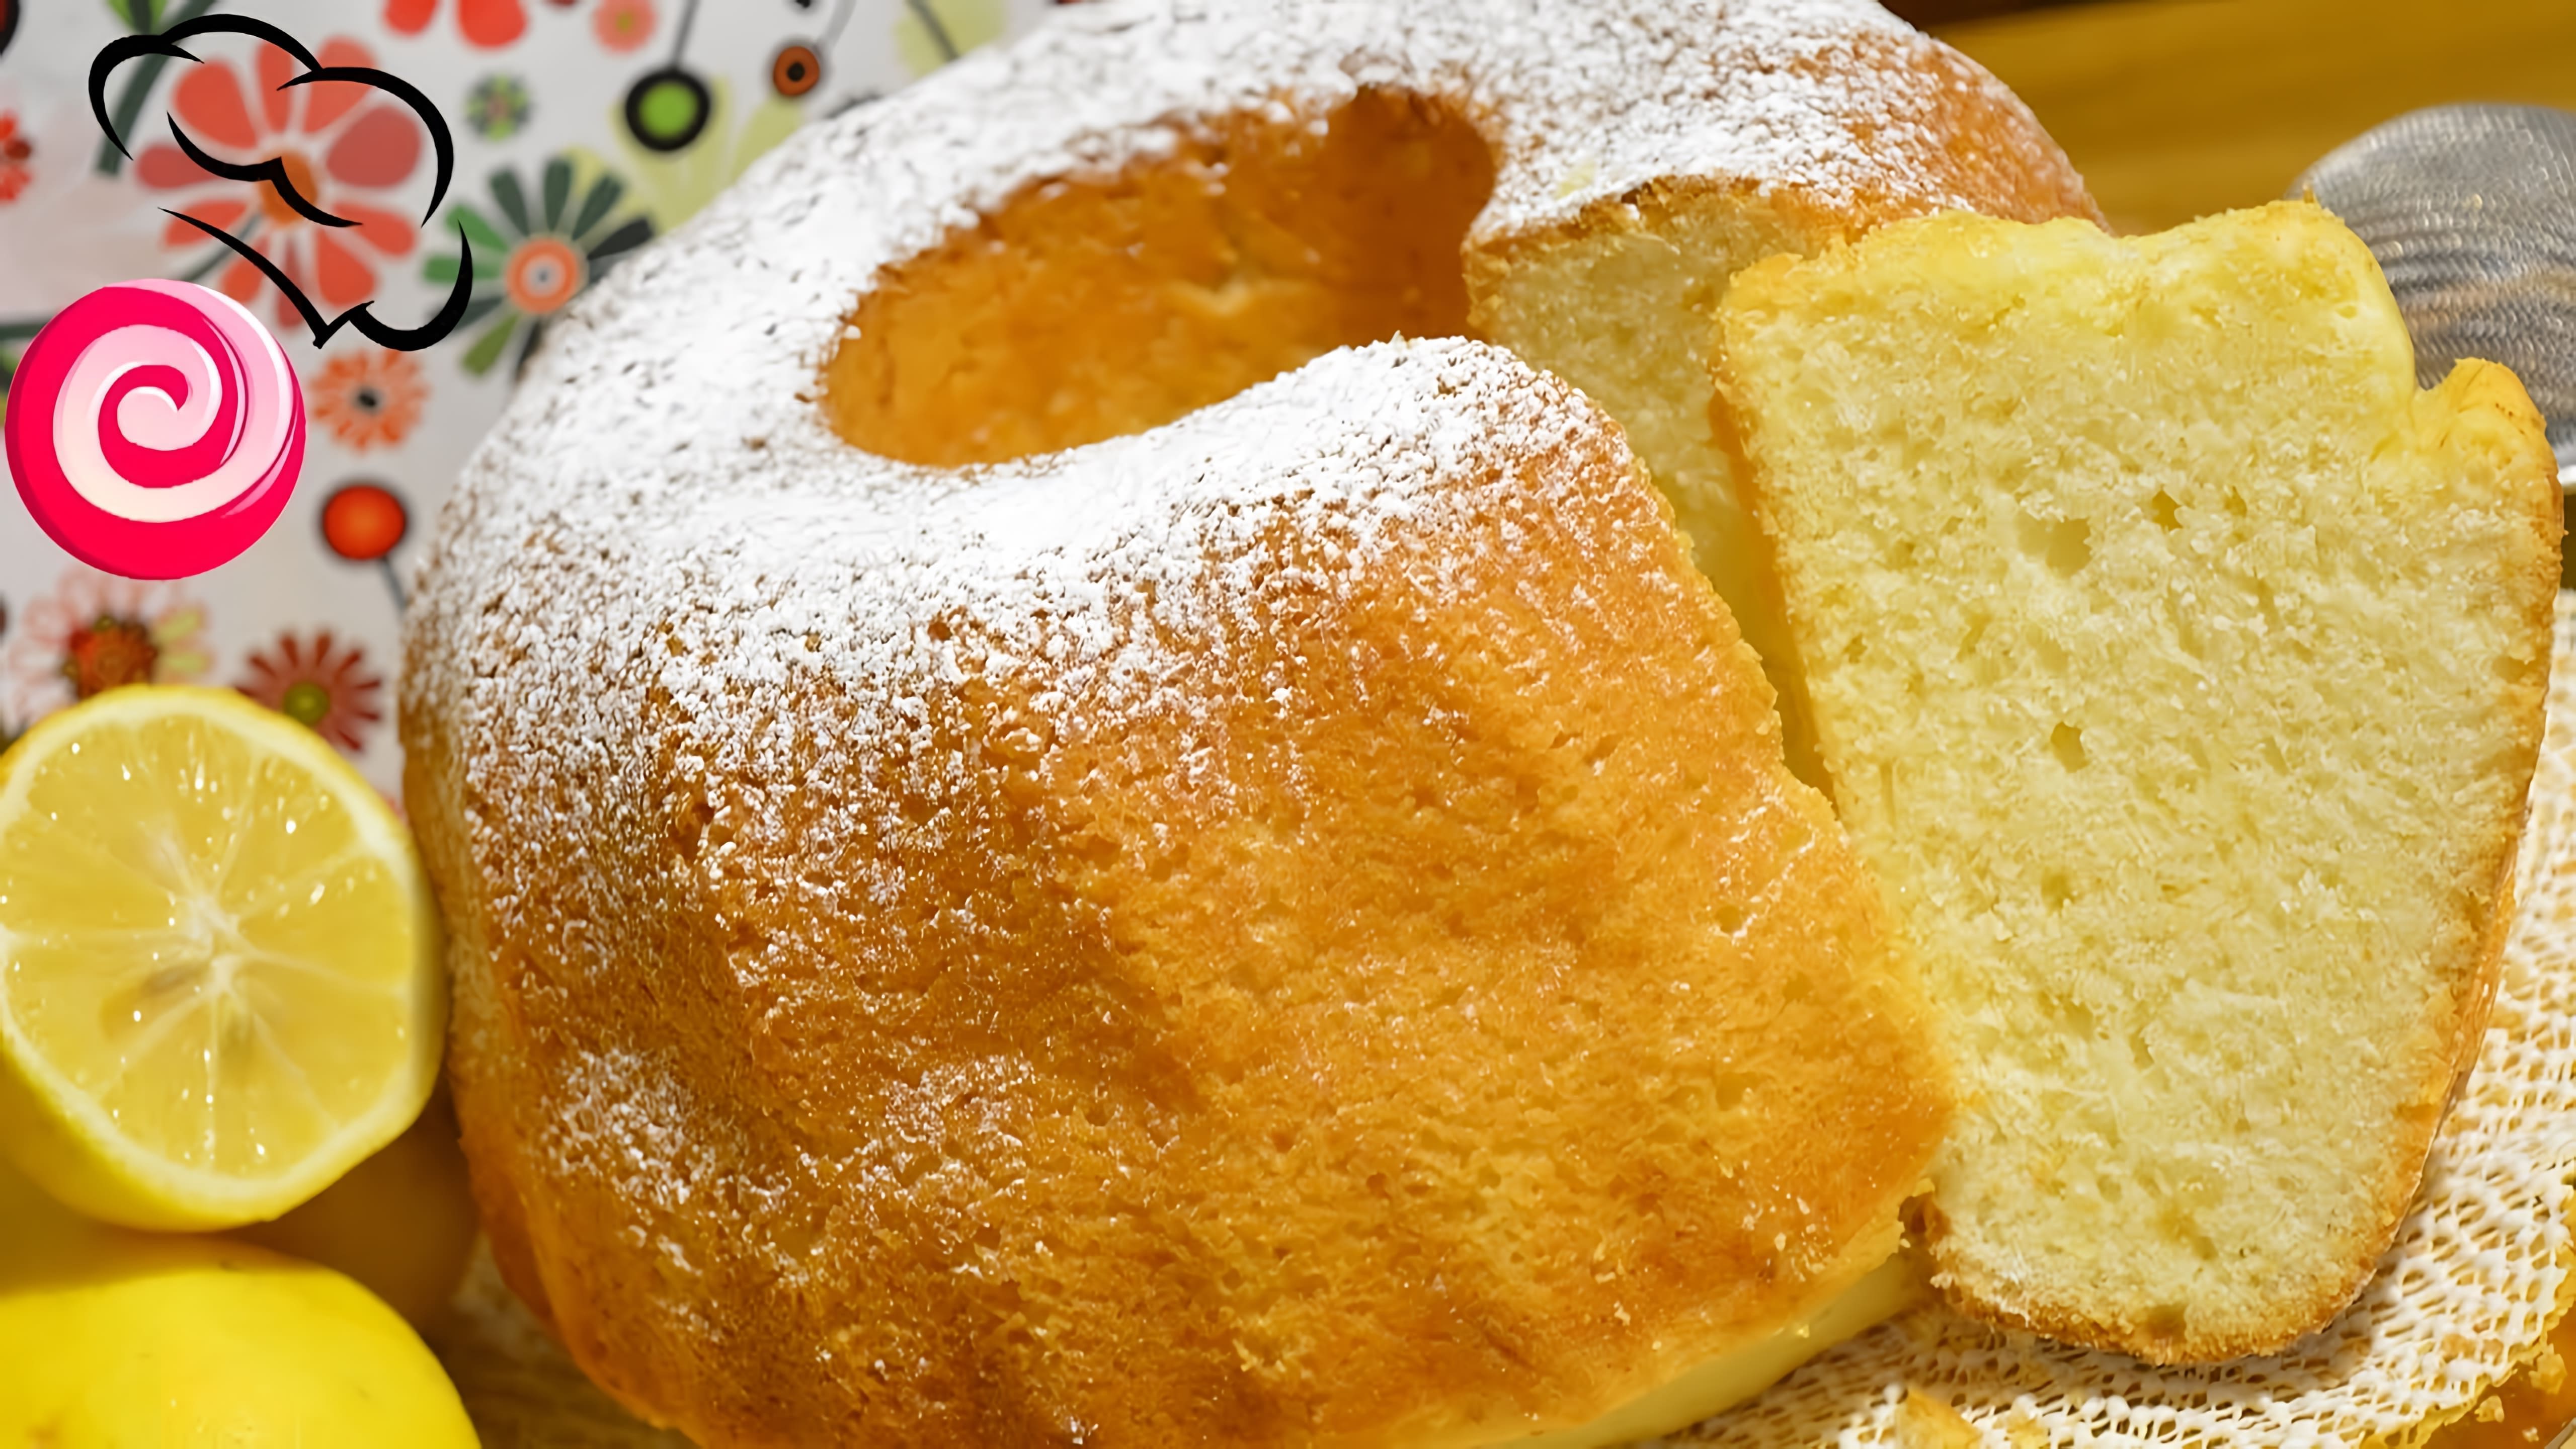 В этом видео демонстрируется рецепт итальянского лимонного кекса